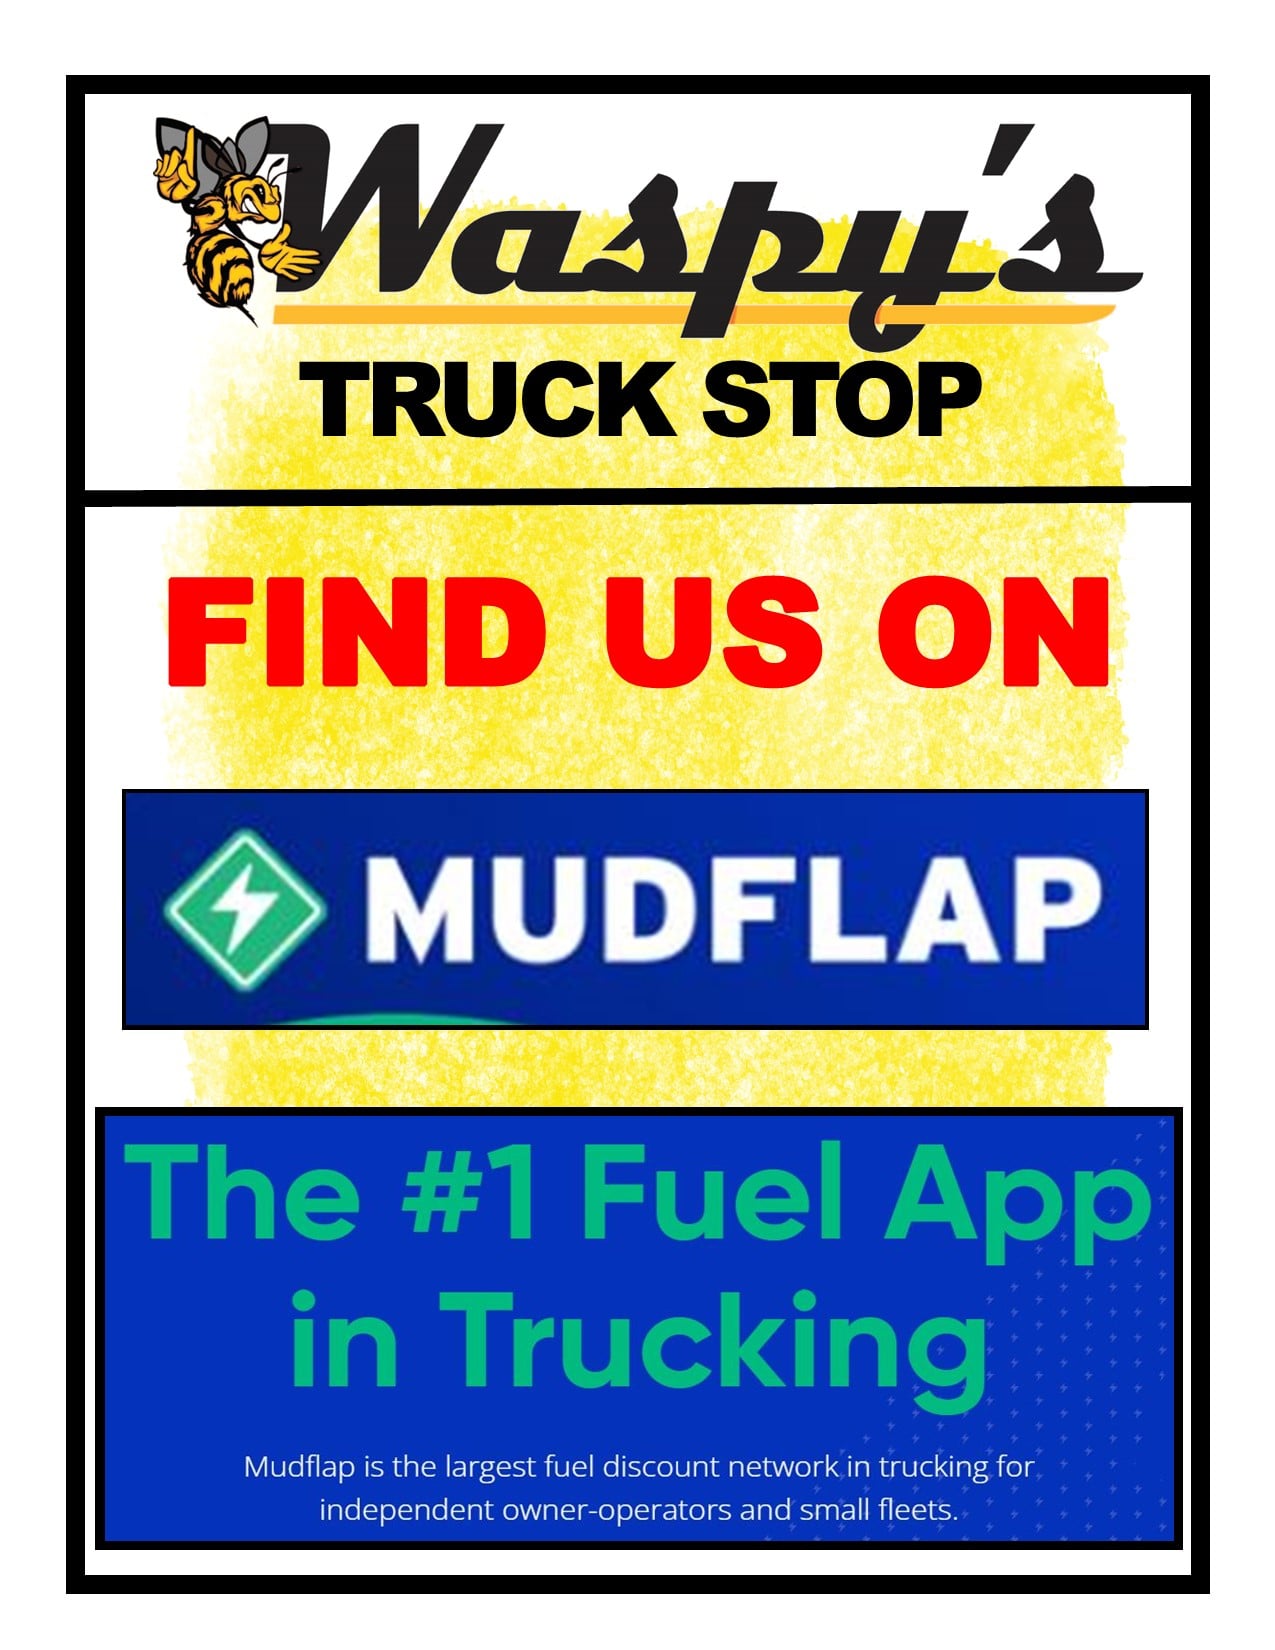 Mudflap fuel app in trucking